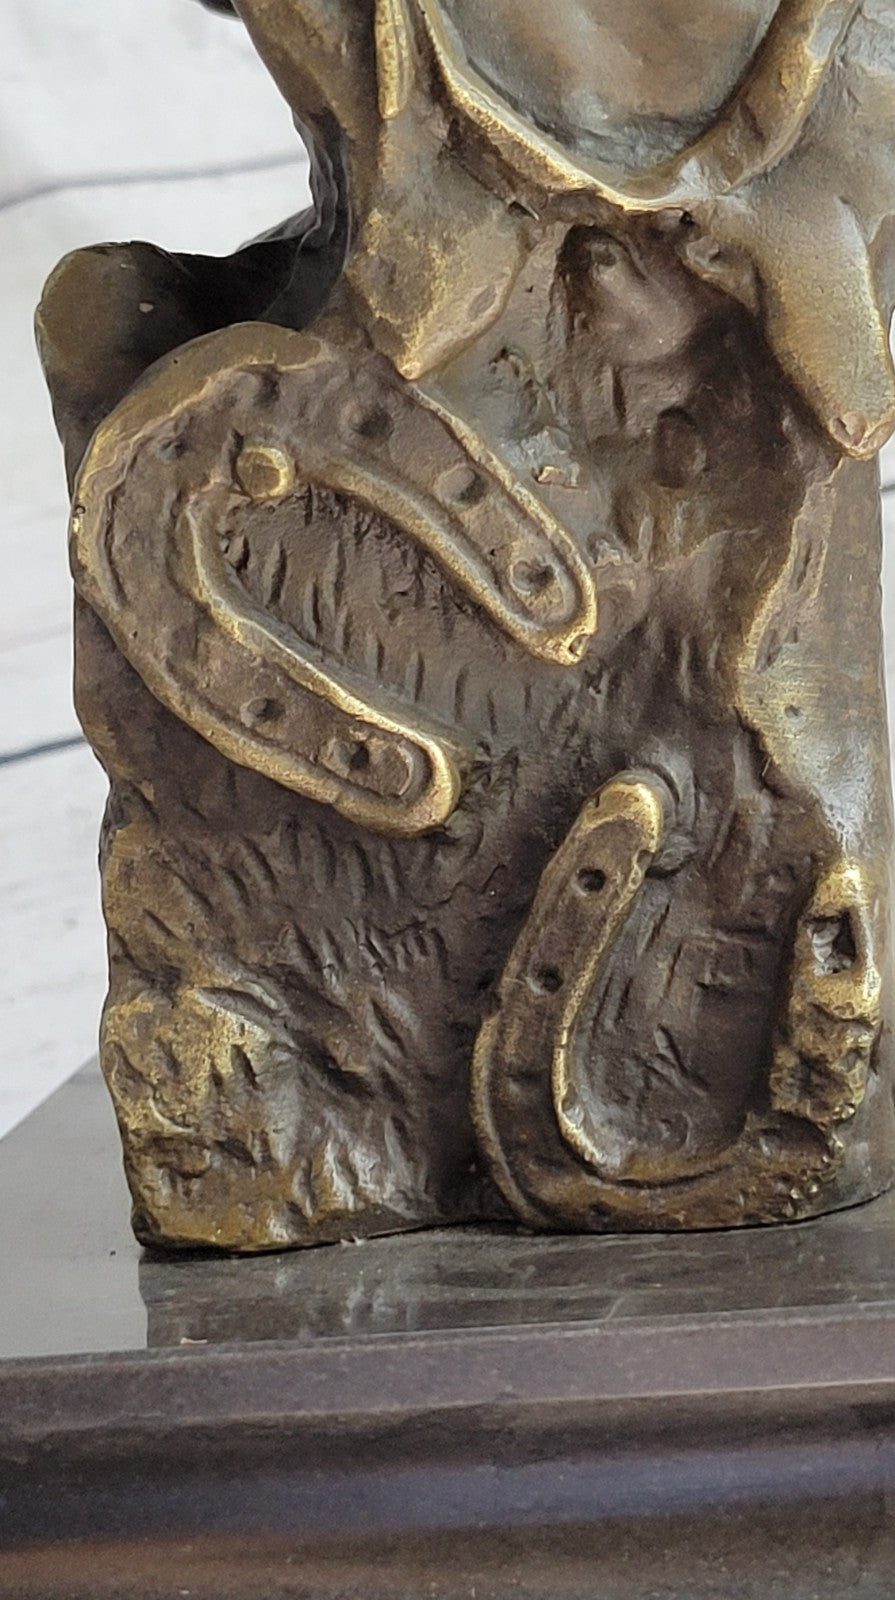 Original Milo Gorgeous Bust Horse Head Bronze Figure Sculpture Art Figurine